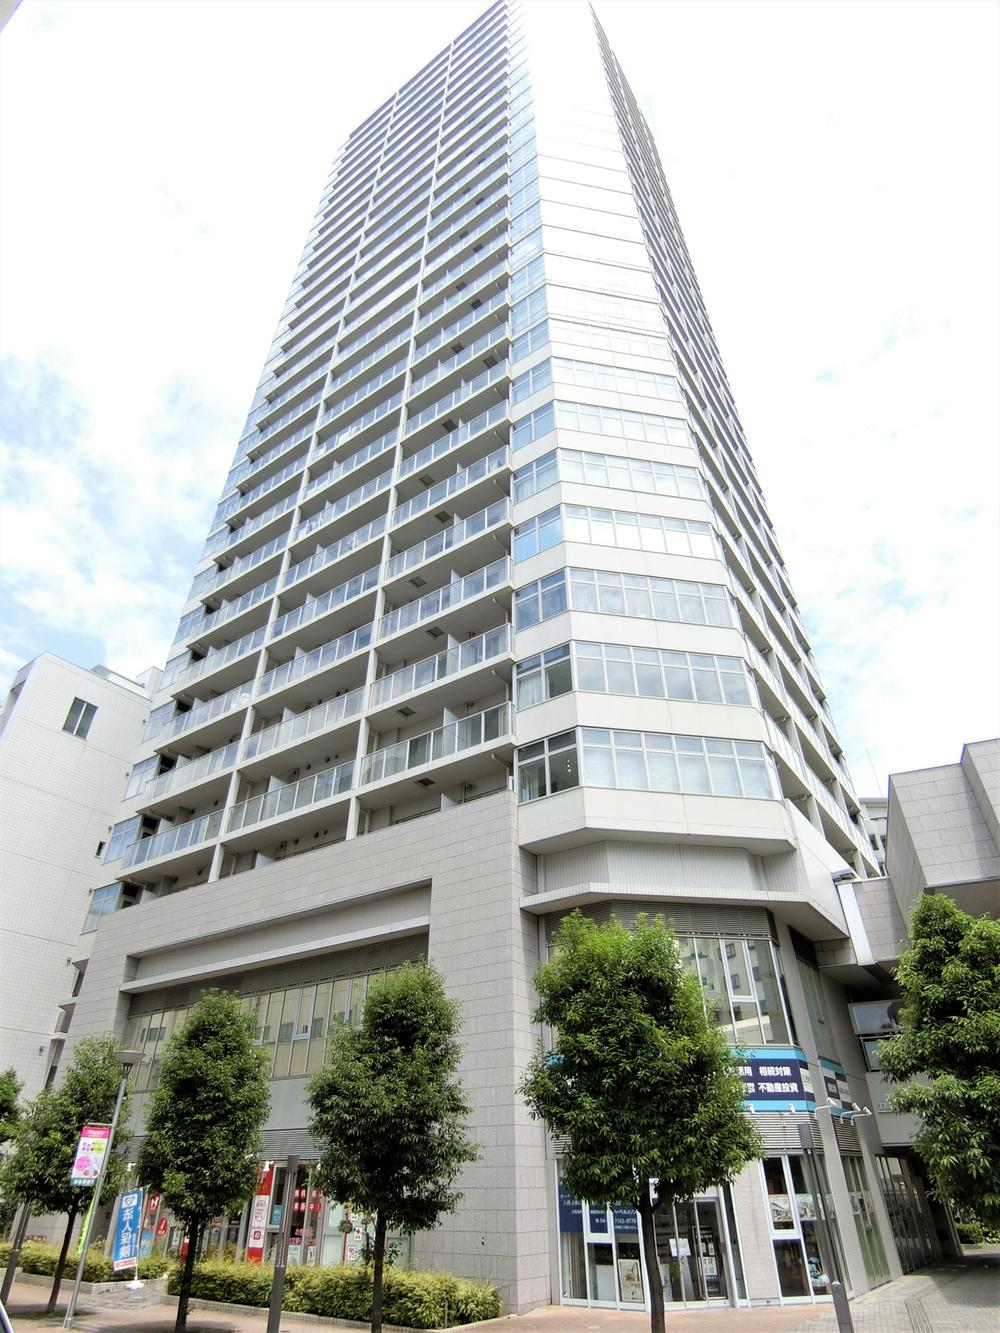 The Kashiwa Tower